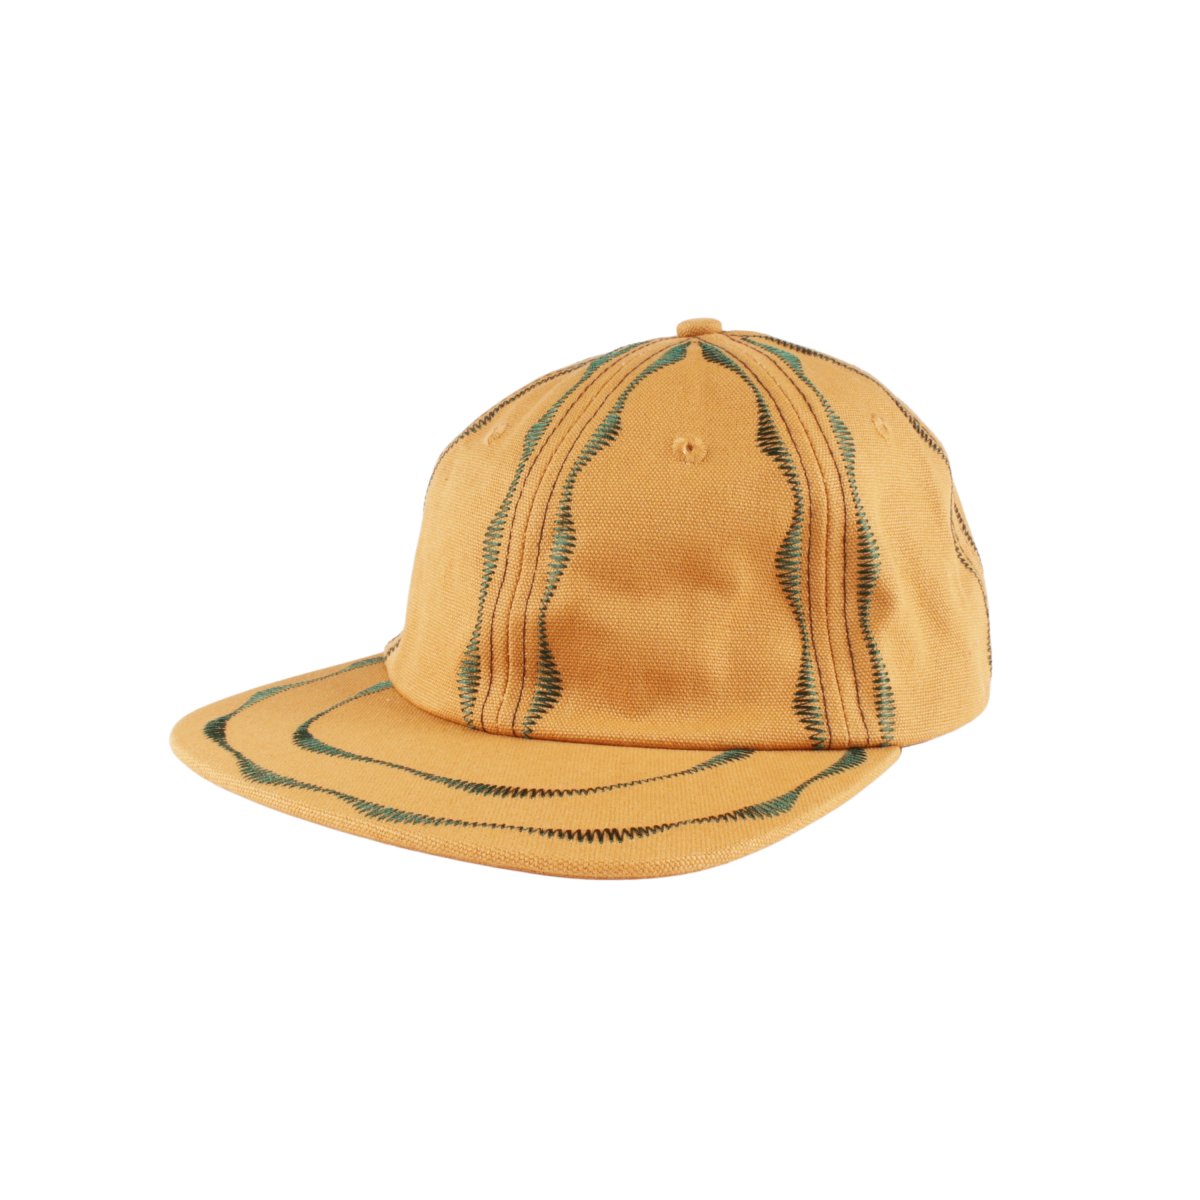 WELDER'S STITCH HAT 【Workwear Brown/Forest】